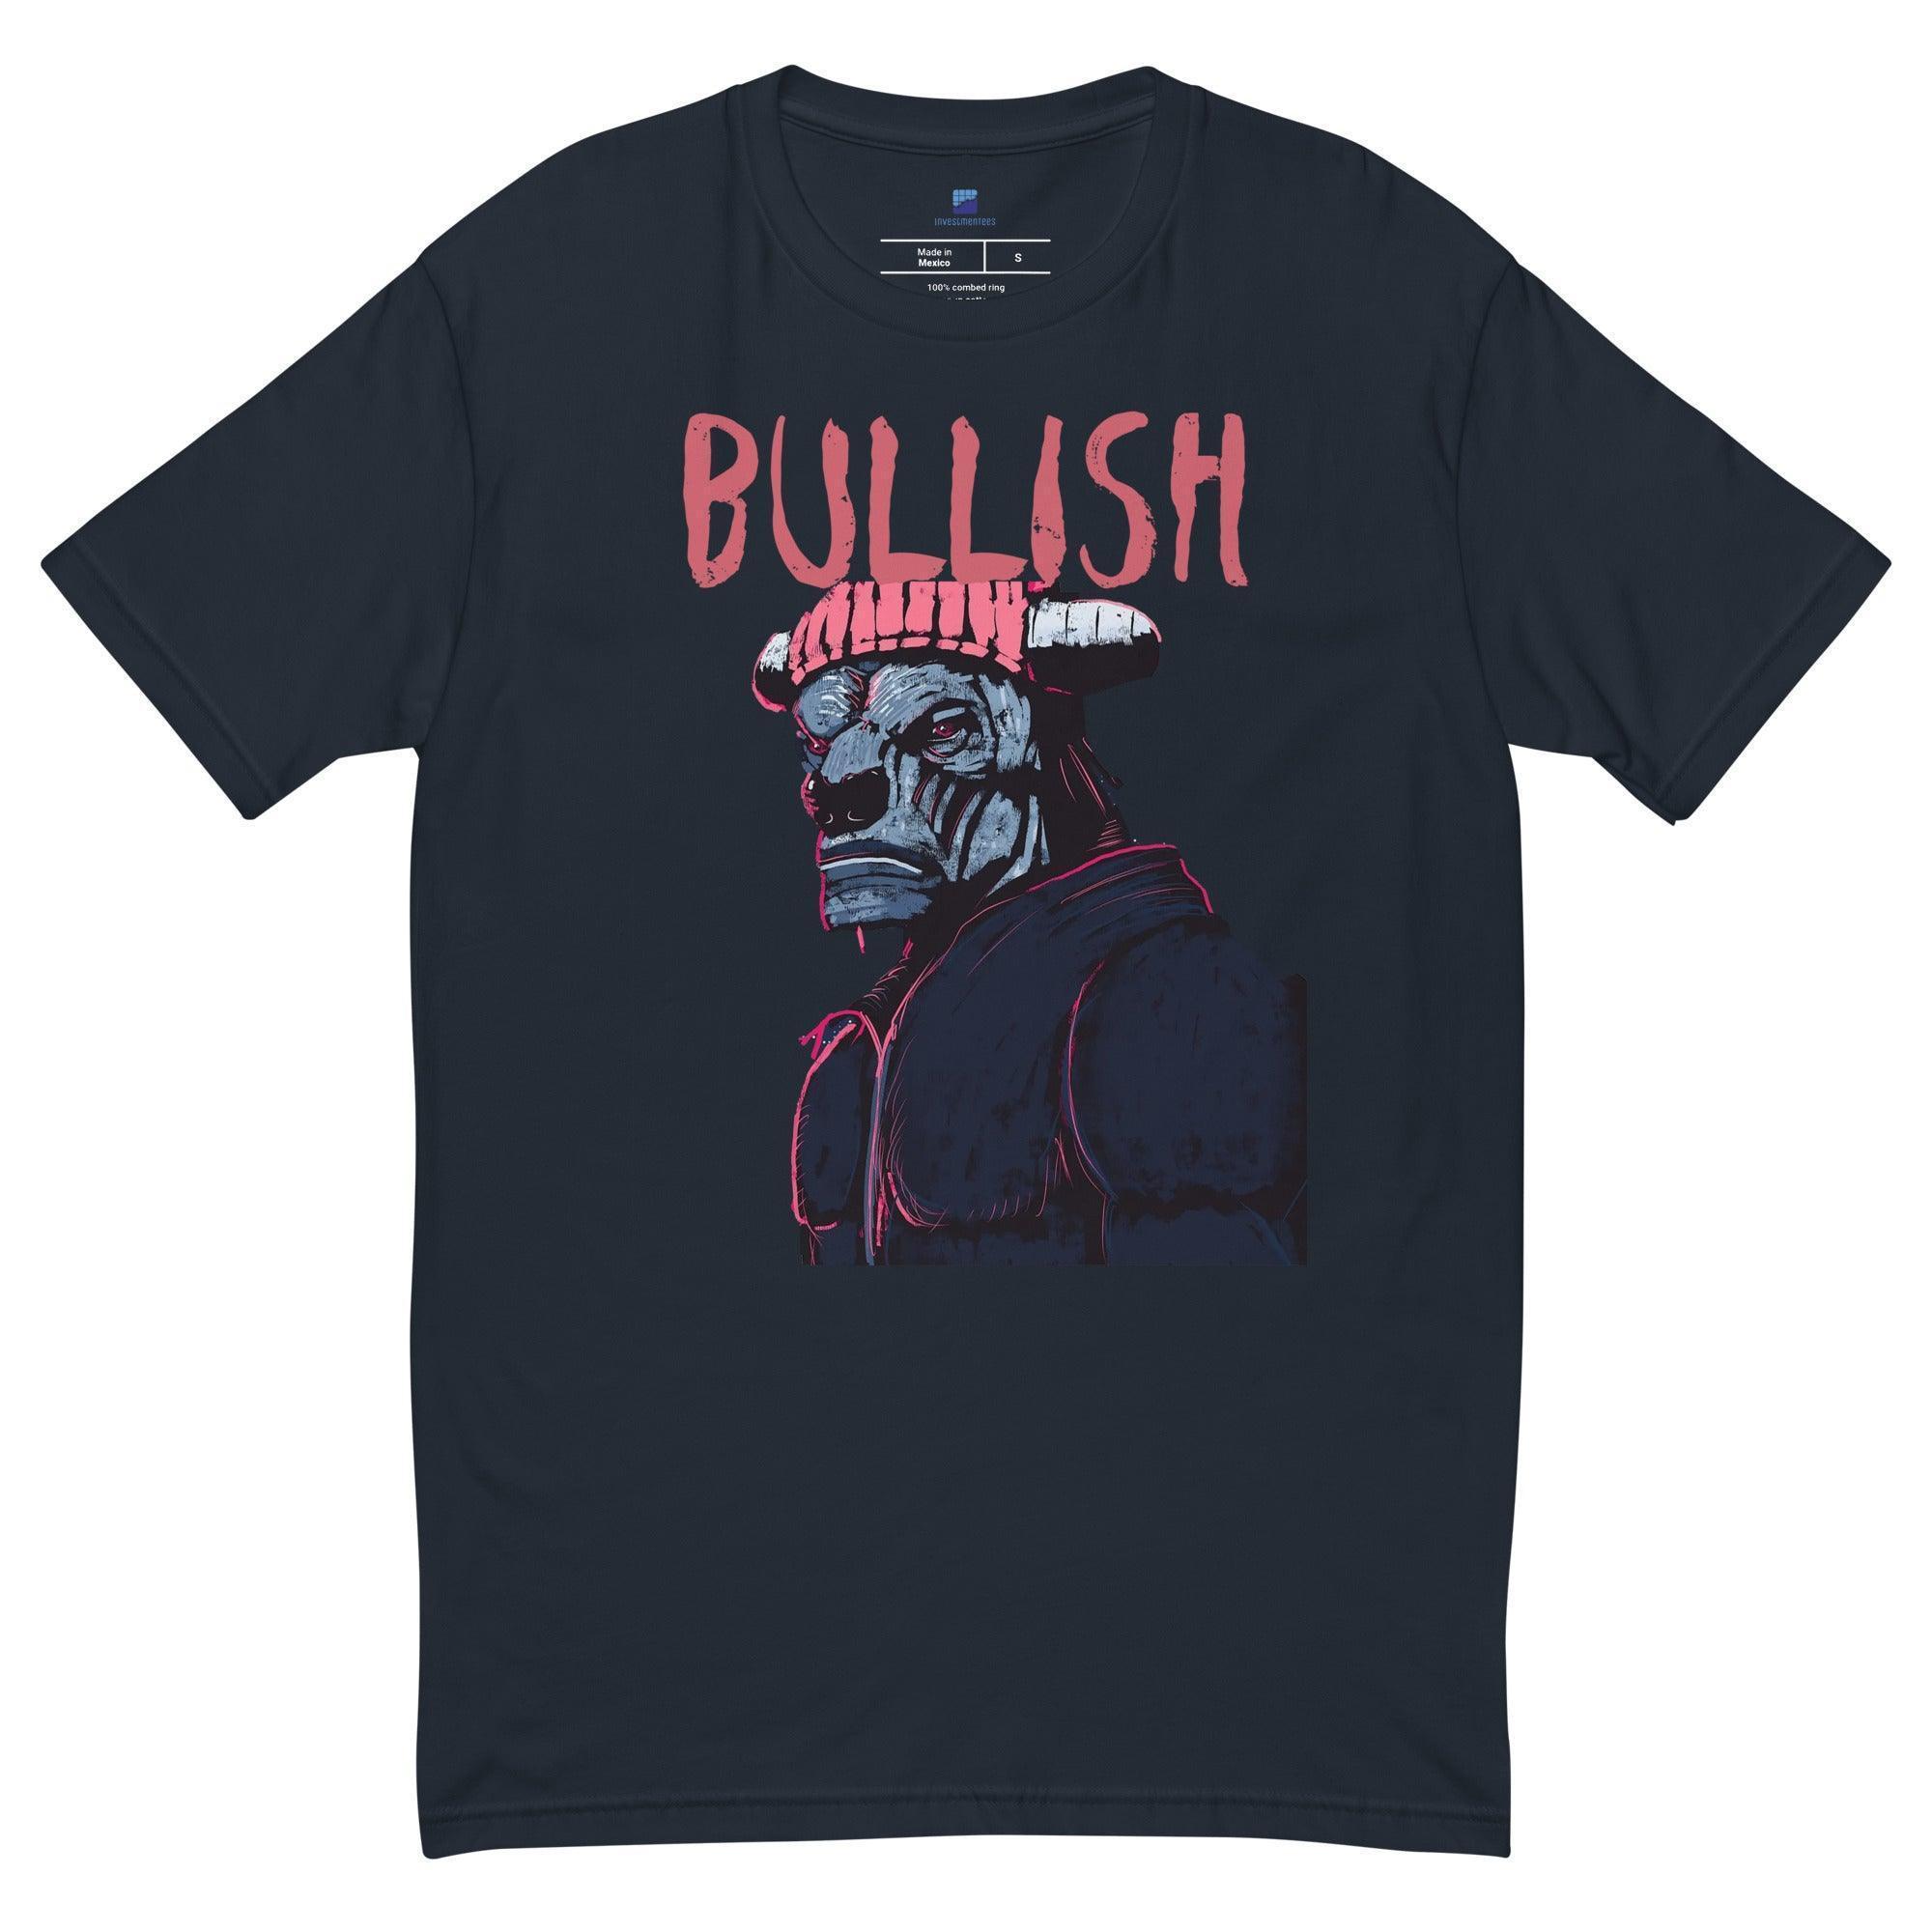 Bullish | Serious Bull T-Shirt - InvestmenTees